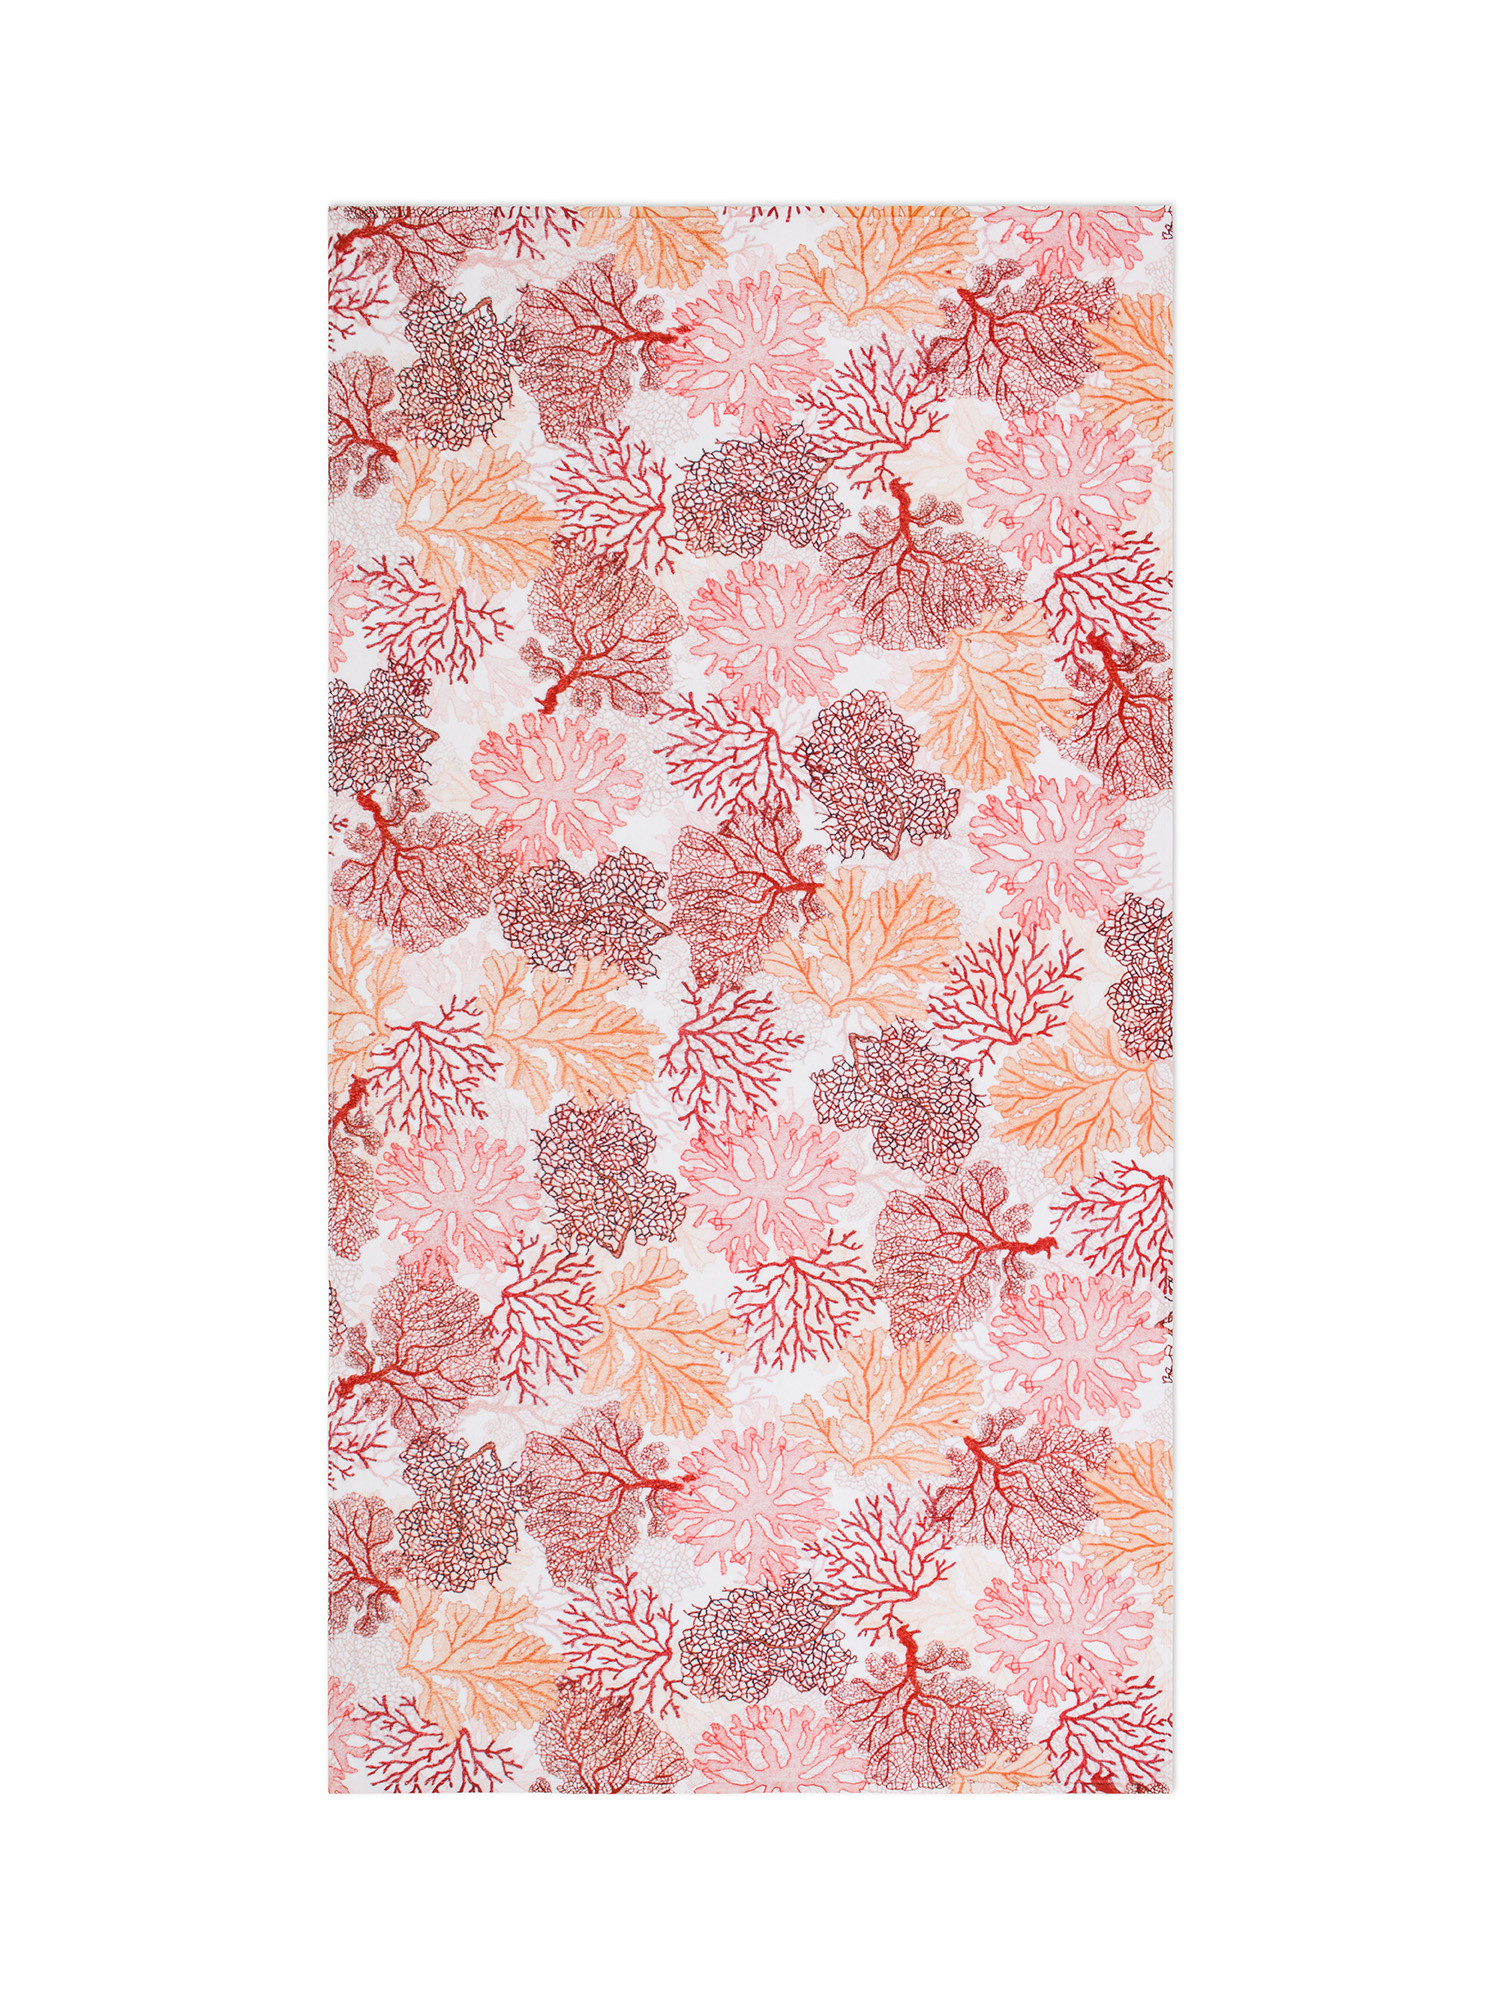 Хлопковое махровое пляжное полотенце с коралловым принтом Coincasa, розовый отличное пляжное полотенце приятное для кожи практичное утолщенное быстросохнущее пляжное полотенце полотенце для рук